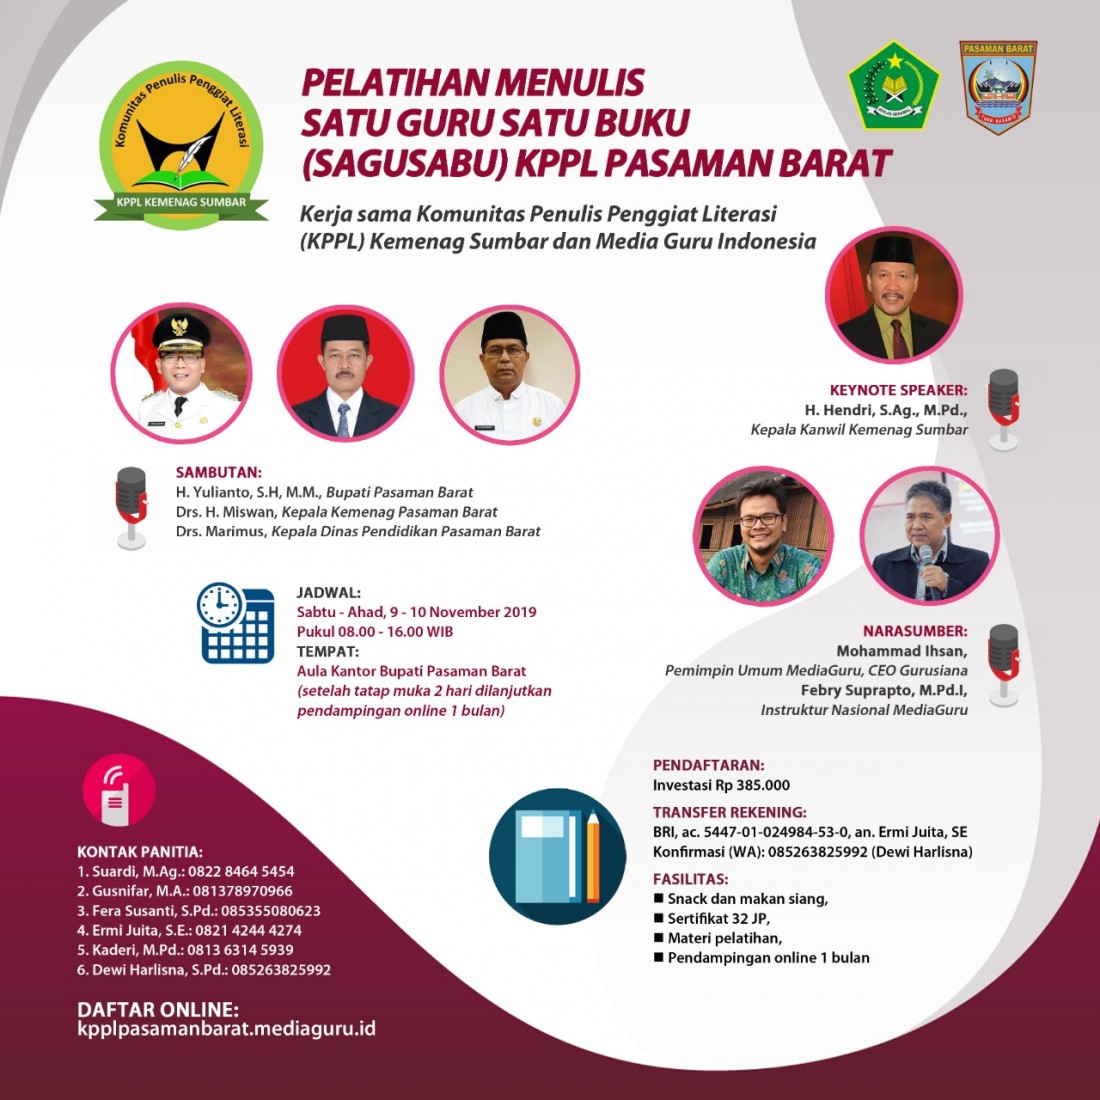 Pelatihan Menulis Sagusabu KPPL Pasaman Barat (9 - 10 November 2019)